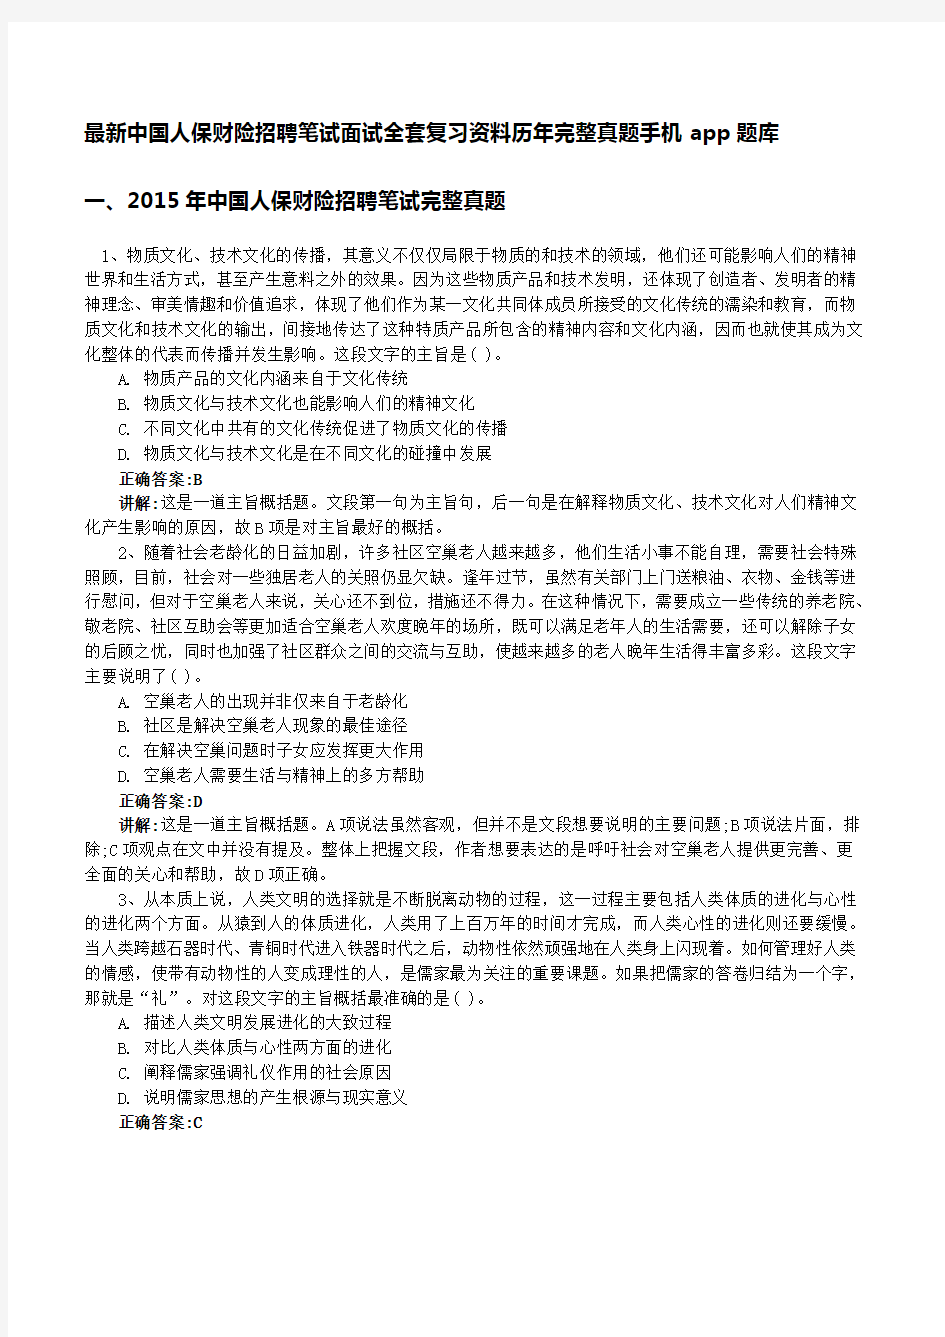 中国人保财险招聘笔试面试复习包历完整真题手机app刷题库 